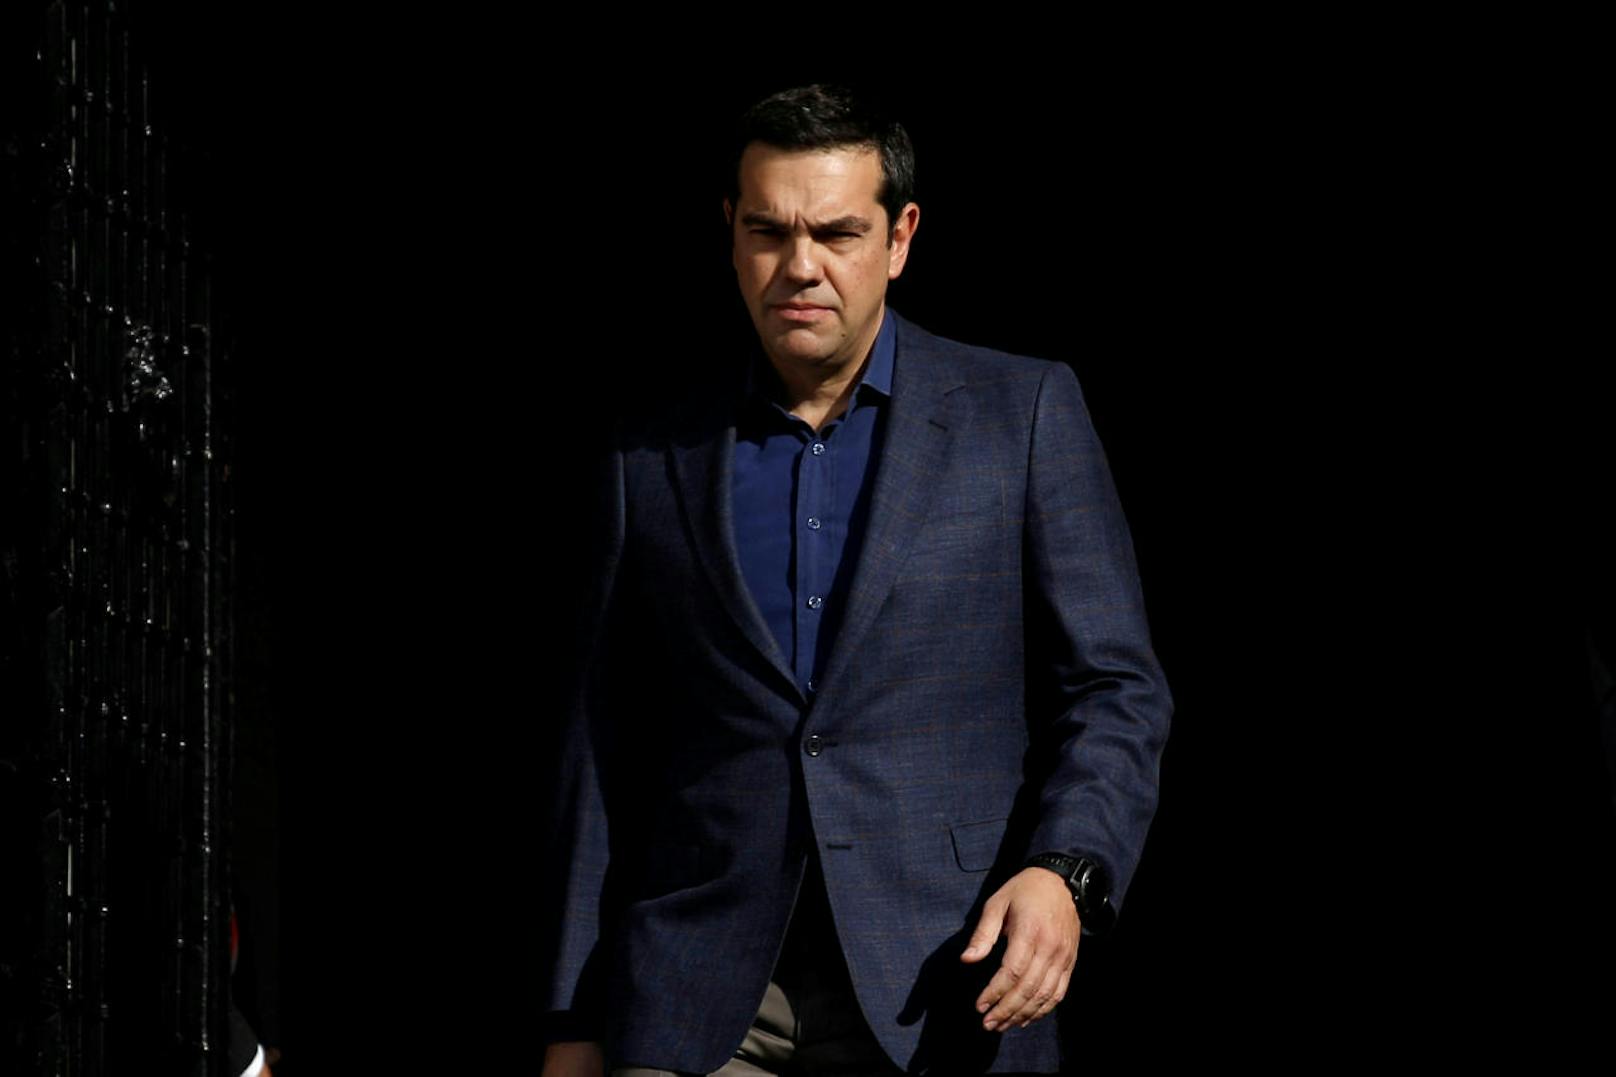 <b>Platz 39: Griechenland</b>
Auf Platz 39 liegt Griechenland. Dessen Premier Alexis Tsipras verdient jährlich <b>66.900 Euro</b>, was knapp dem Dreifachen eines landesüblichen Durchschnittseinkommens von 23.900 Euro entspricht.